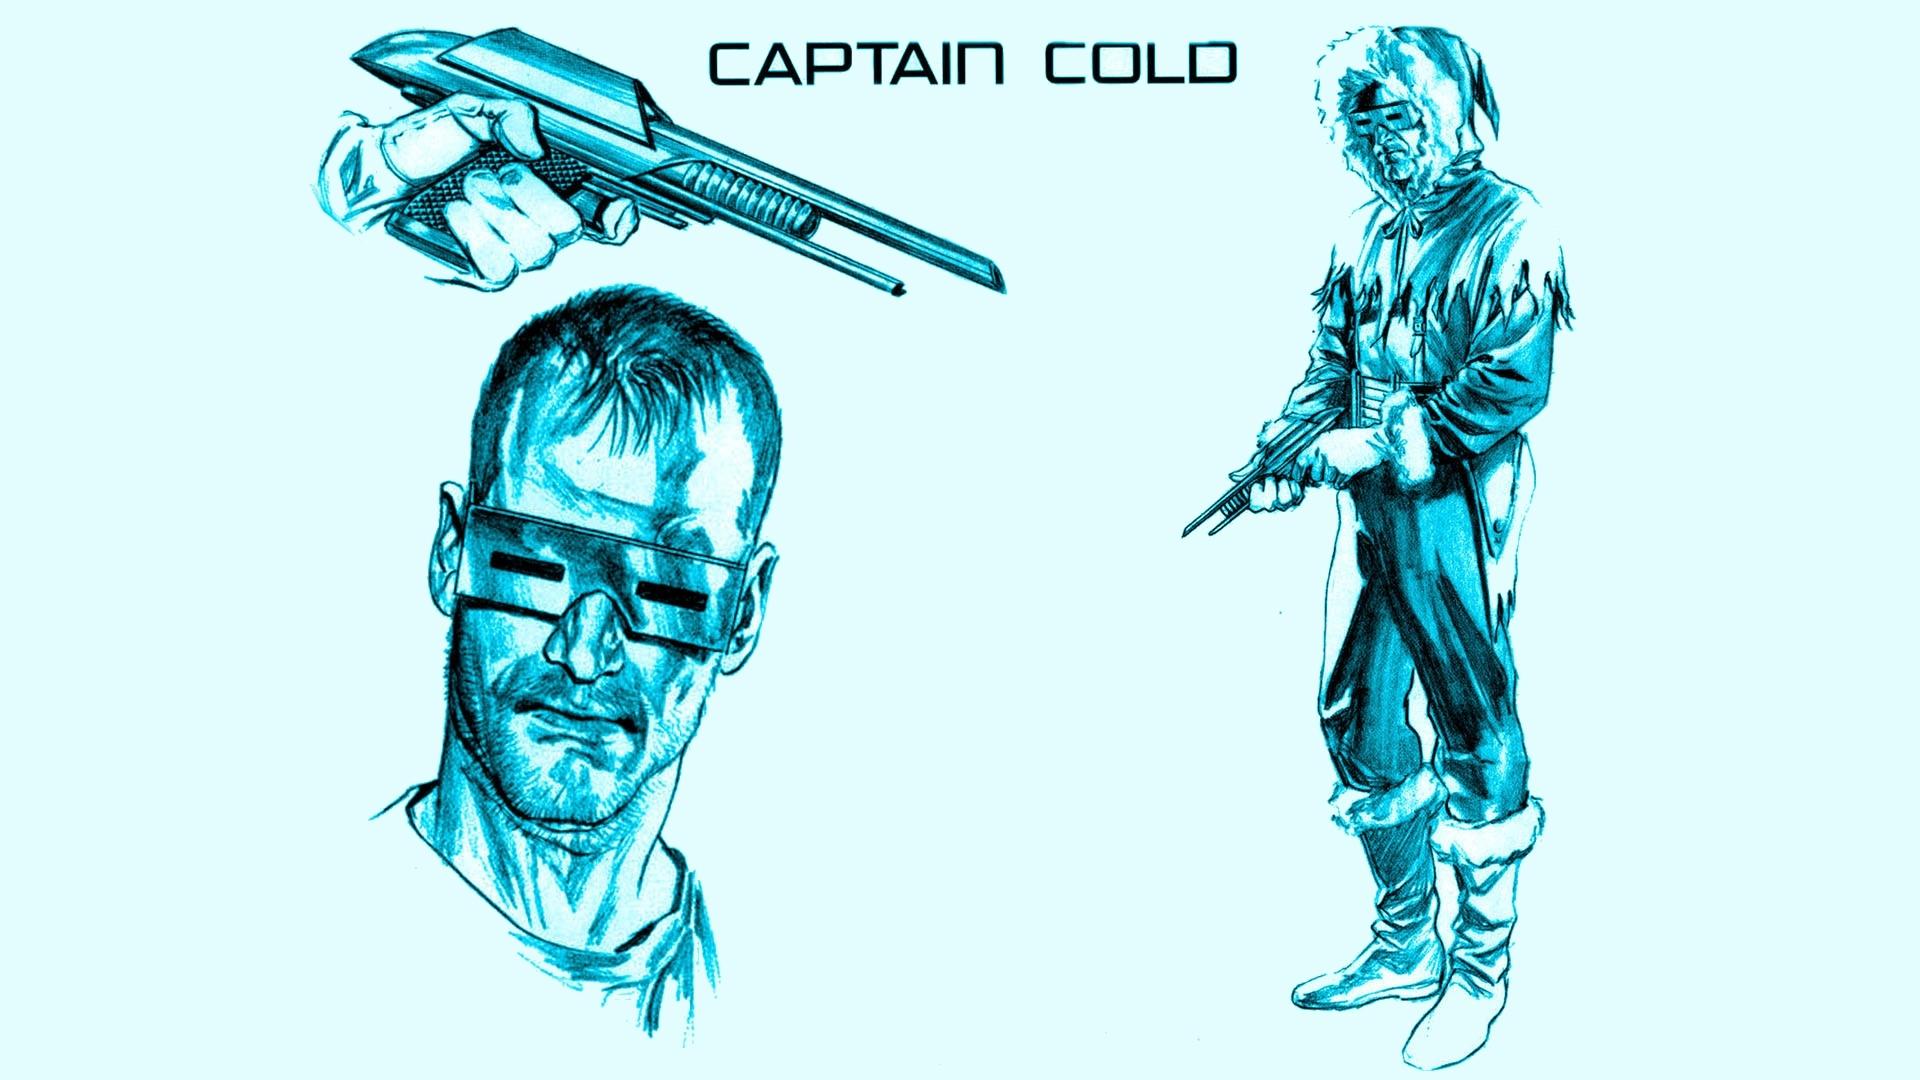 Captain Cold 2048 x 2048 iPad wallpaper download 1920x1080